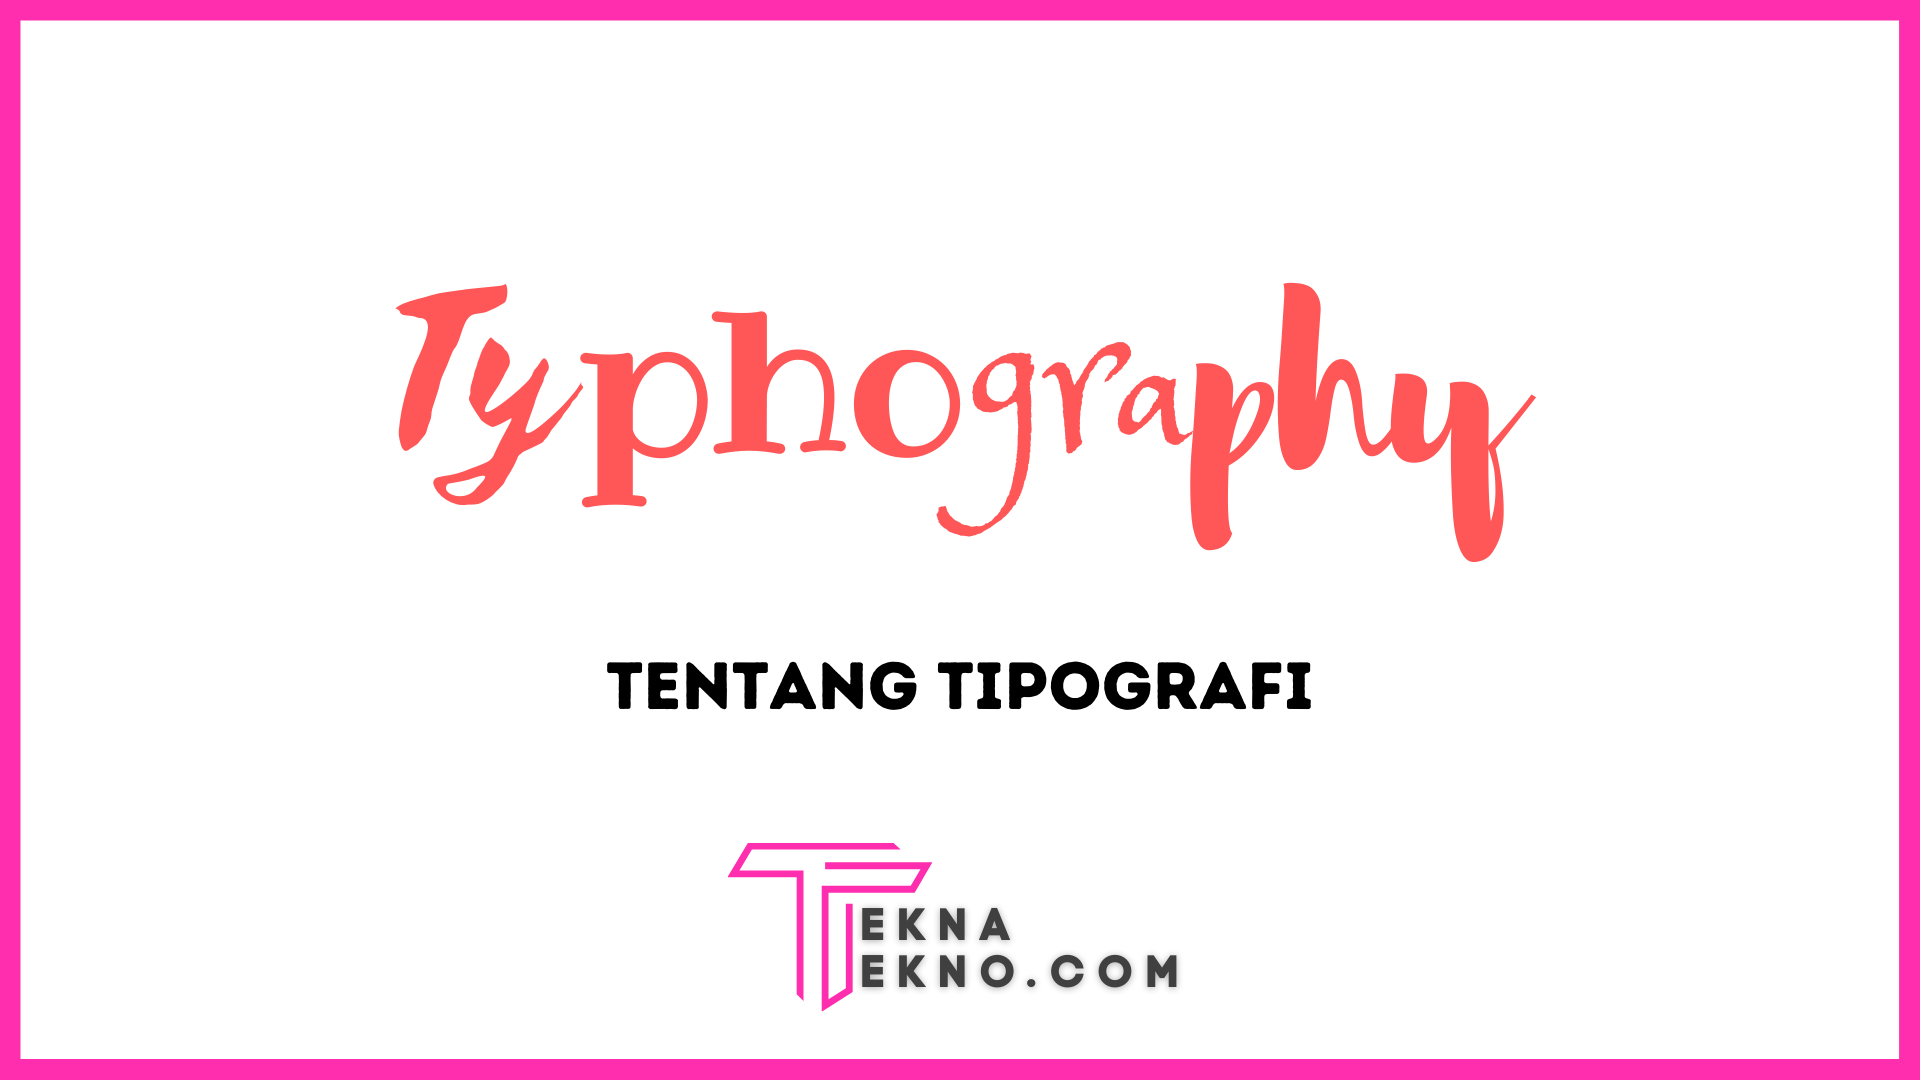 Apa itu Tipografi? Definisi, Tujuan dan Jenisnya